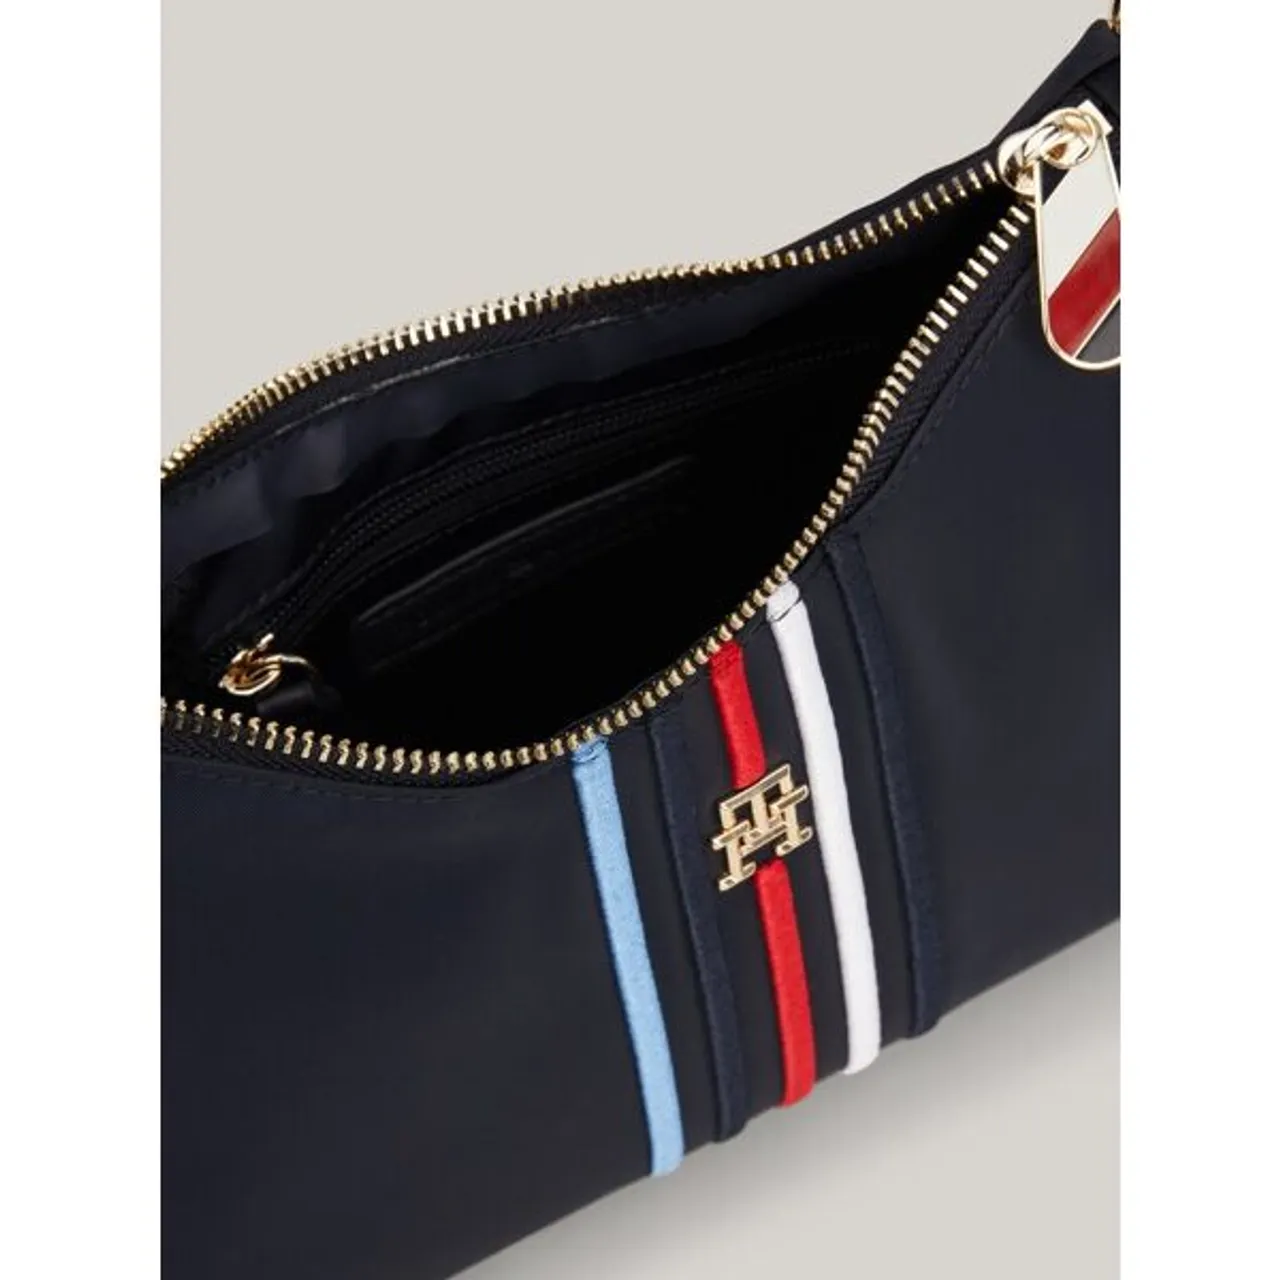 Schultertasche TOMMY HILFIGER "POPPY SHOULDER BAG CORP" Gr. B/H/T: 25 cm x 17,5 cm x 7,5 cm, blau (space blue) Damen Taschen Handtaschen